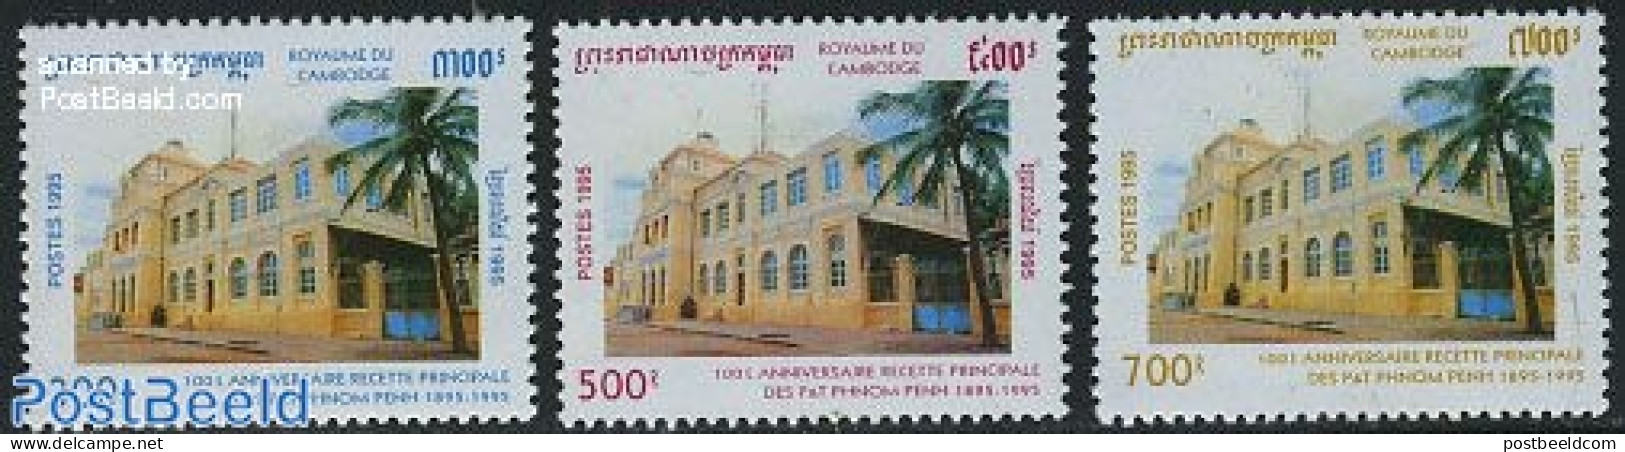 Cambodia 1995 Post Office 3v, Mint NH, Post - Correo Postal